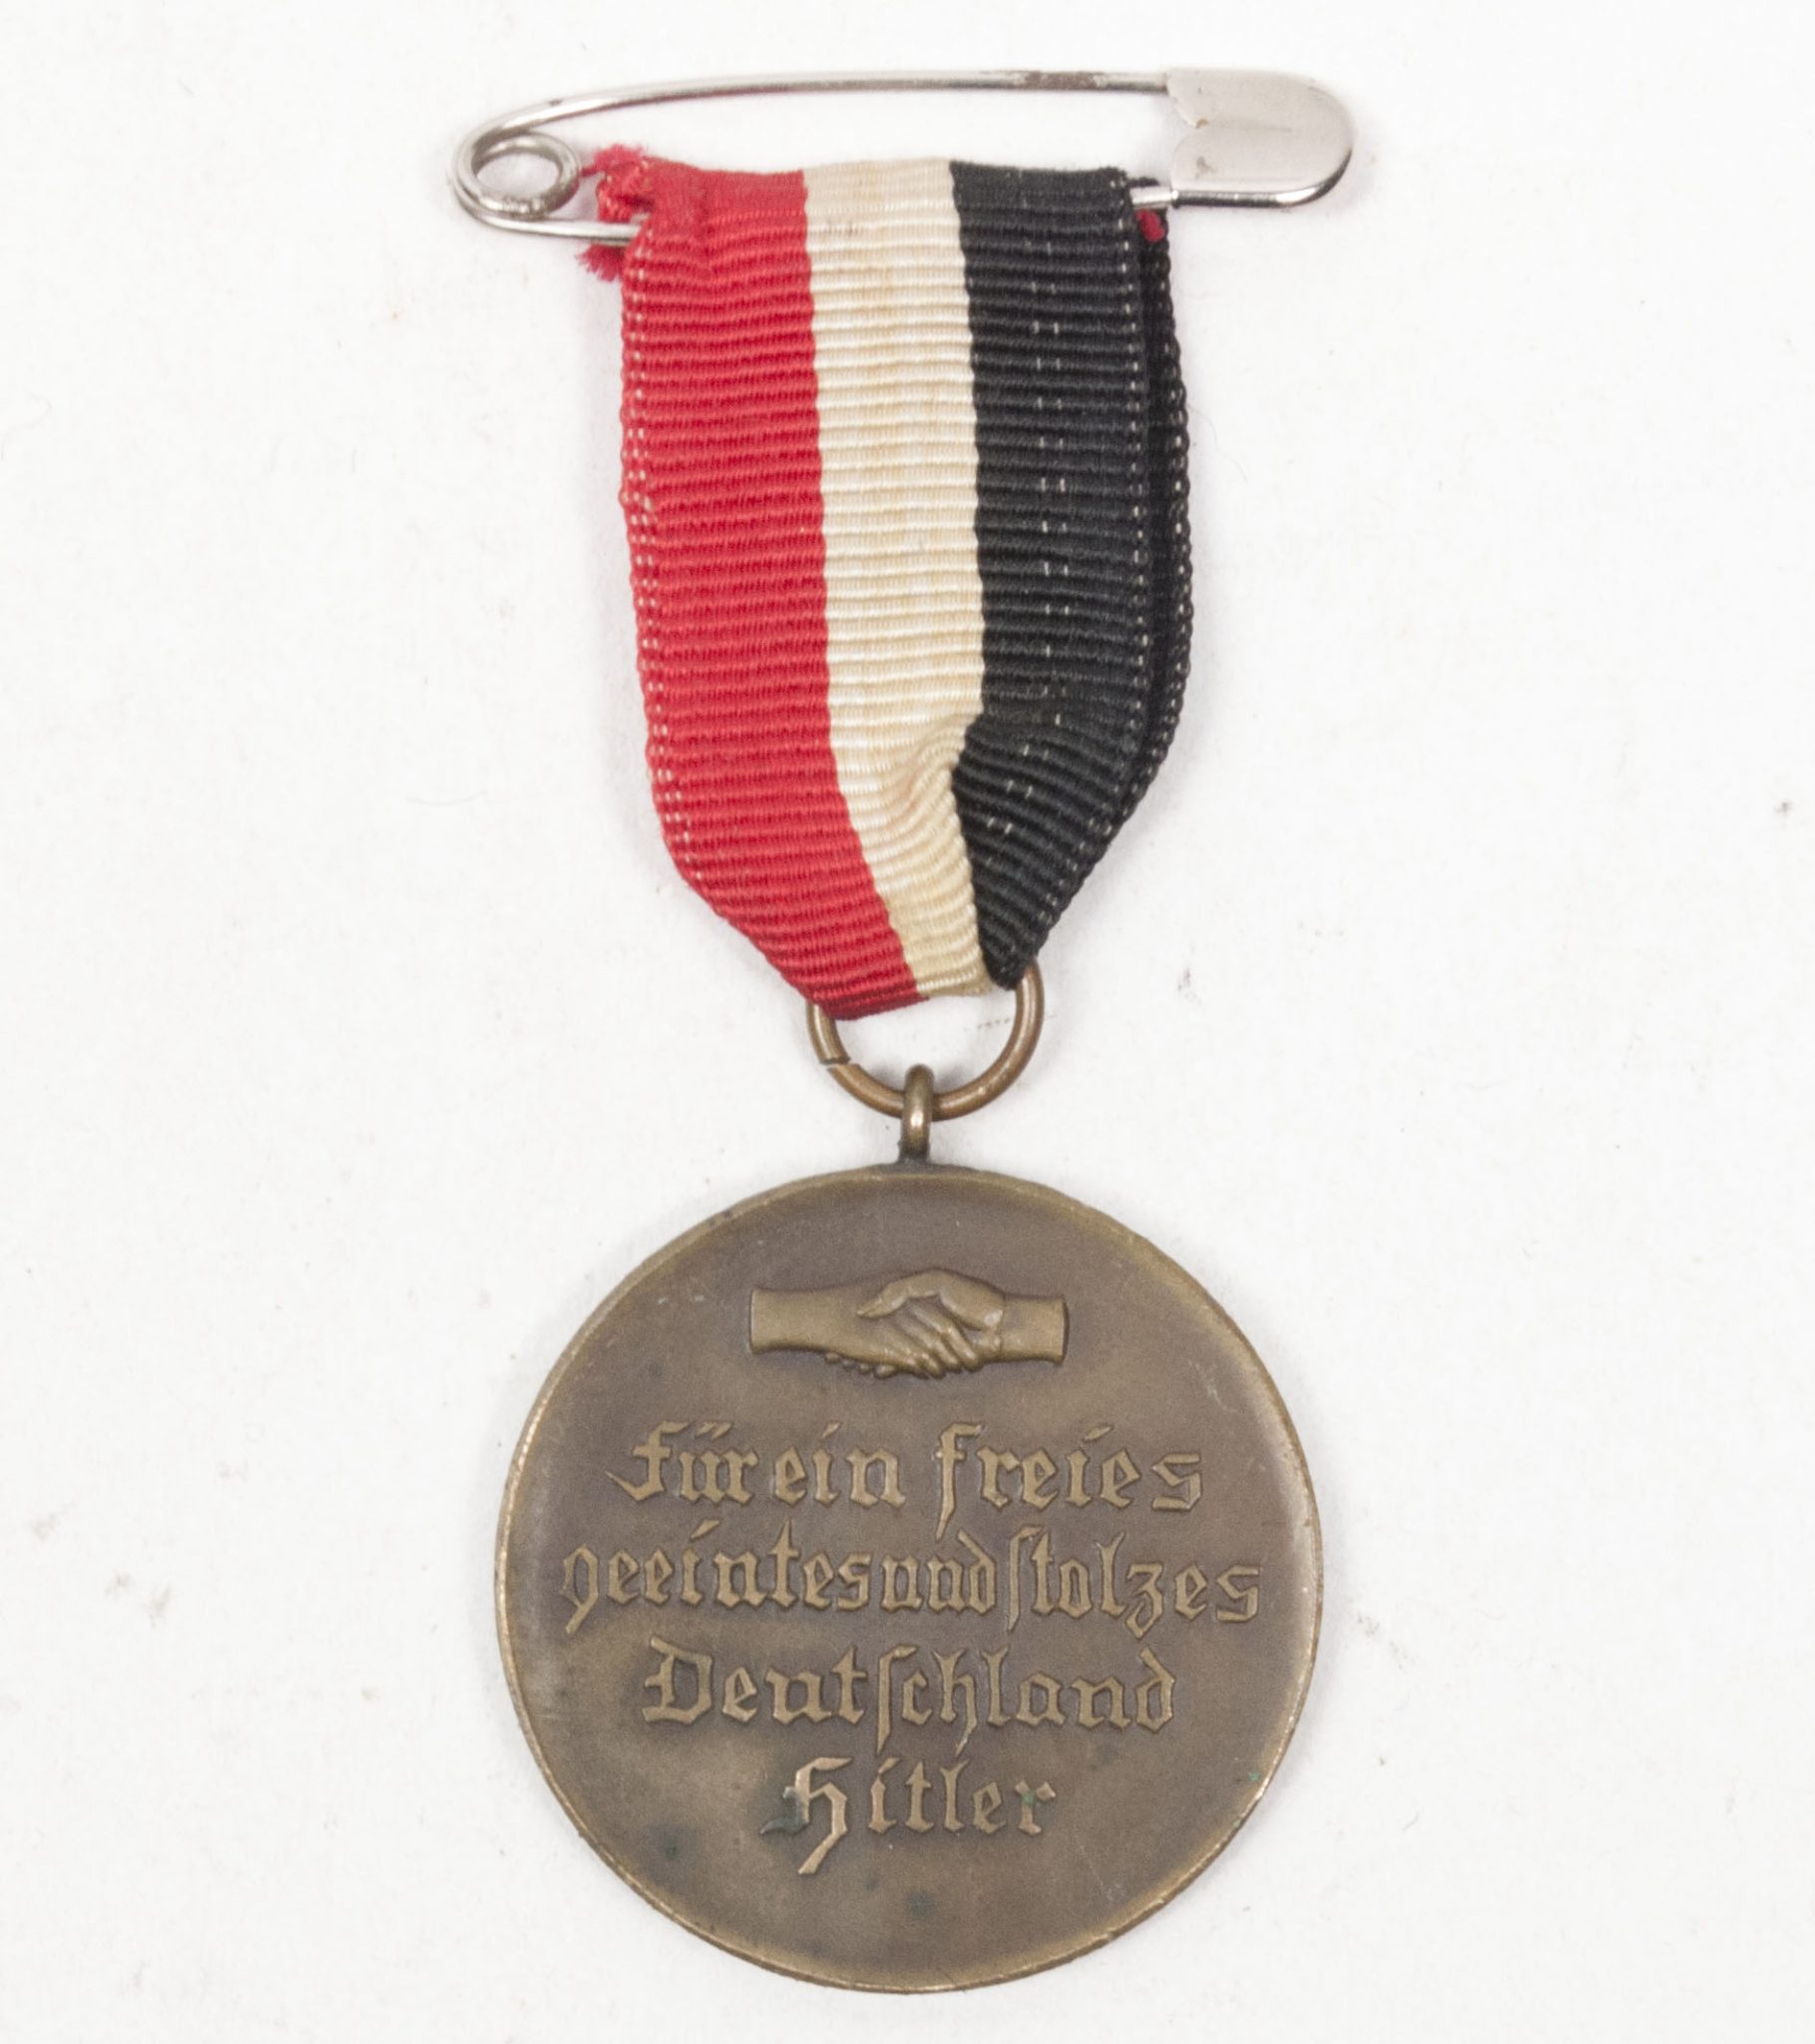 Hitler Hindenburg commemorative medal (1933)